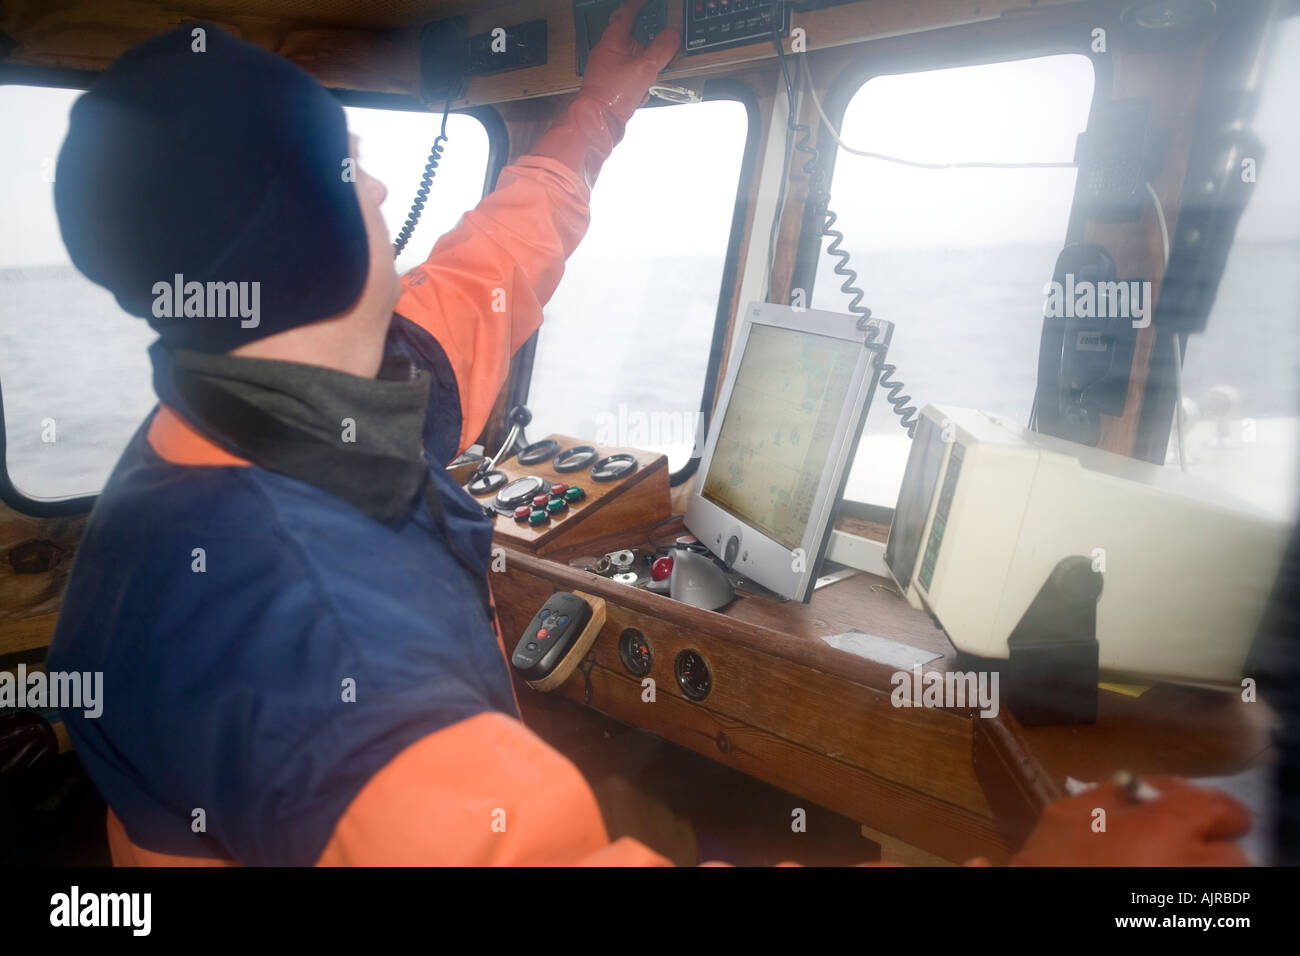 L'homme dans la cabine de son bateau. Les échosondeurs et GPS sont de grandes aides à la navigation dans les eaux côtières de l'ouest de la Suède l'Europe Banque D'Images